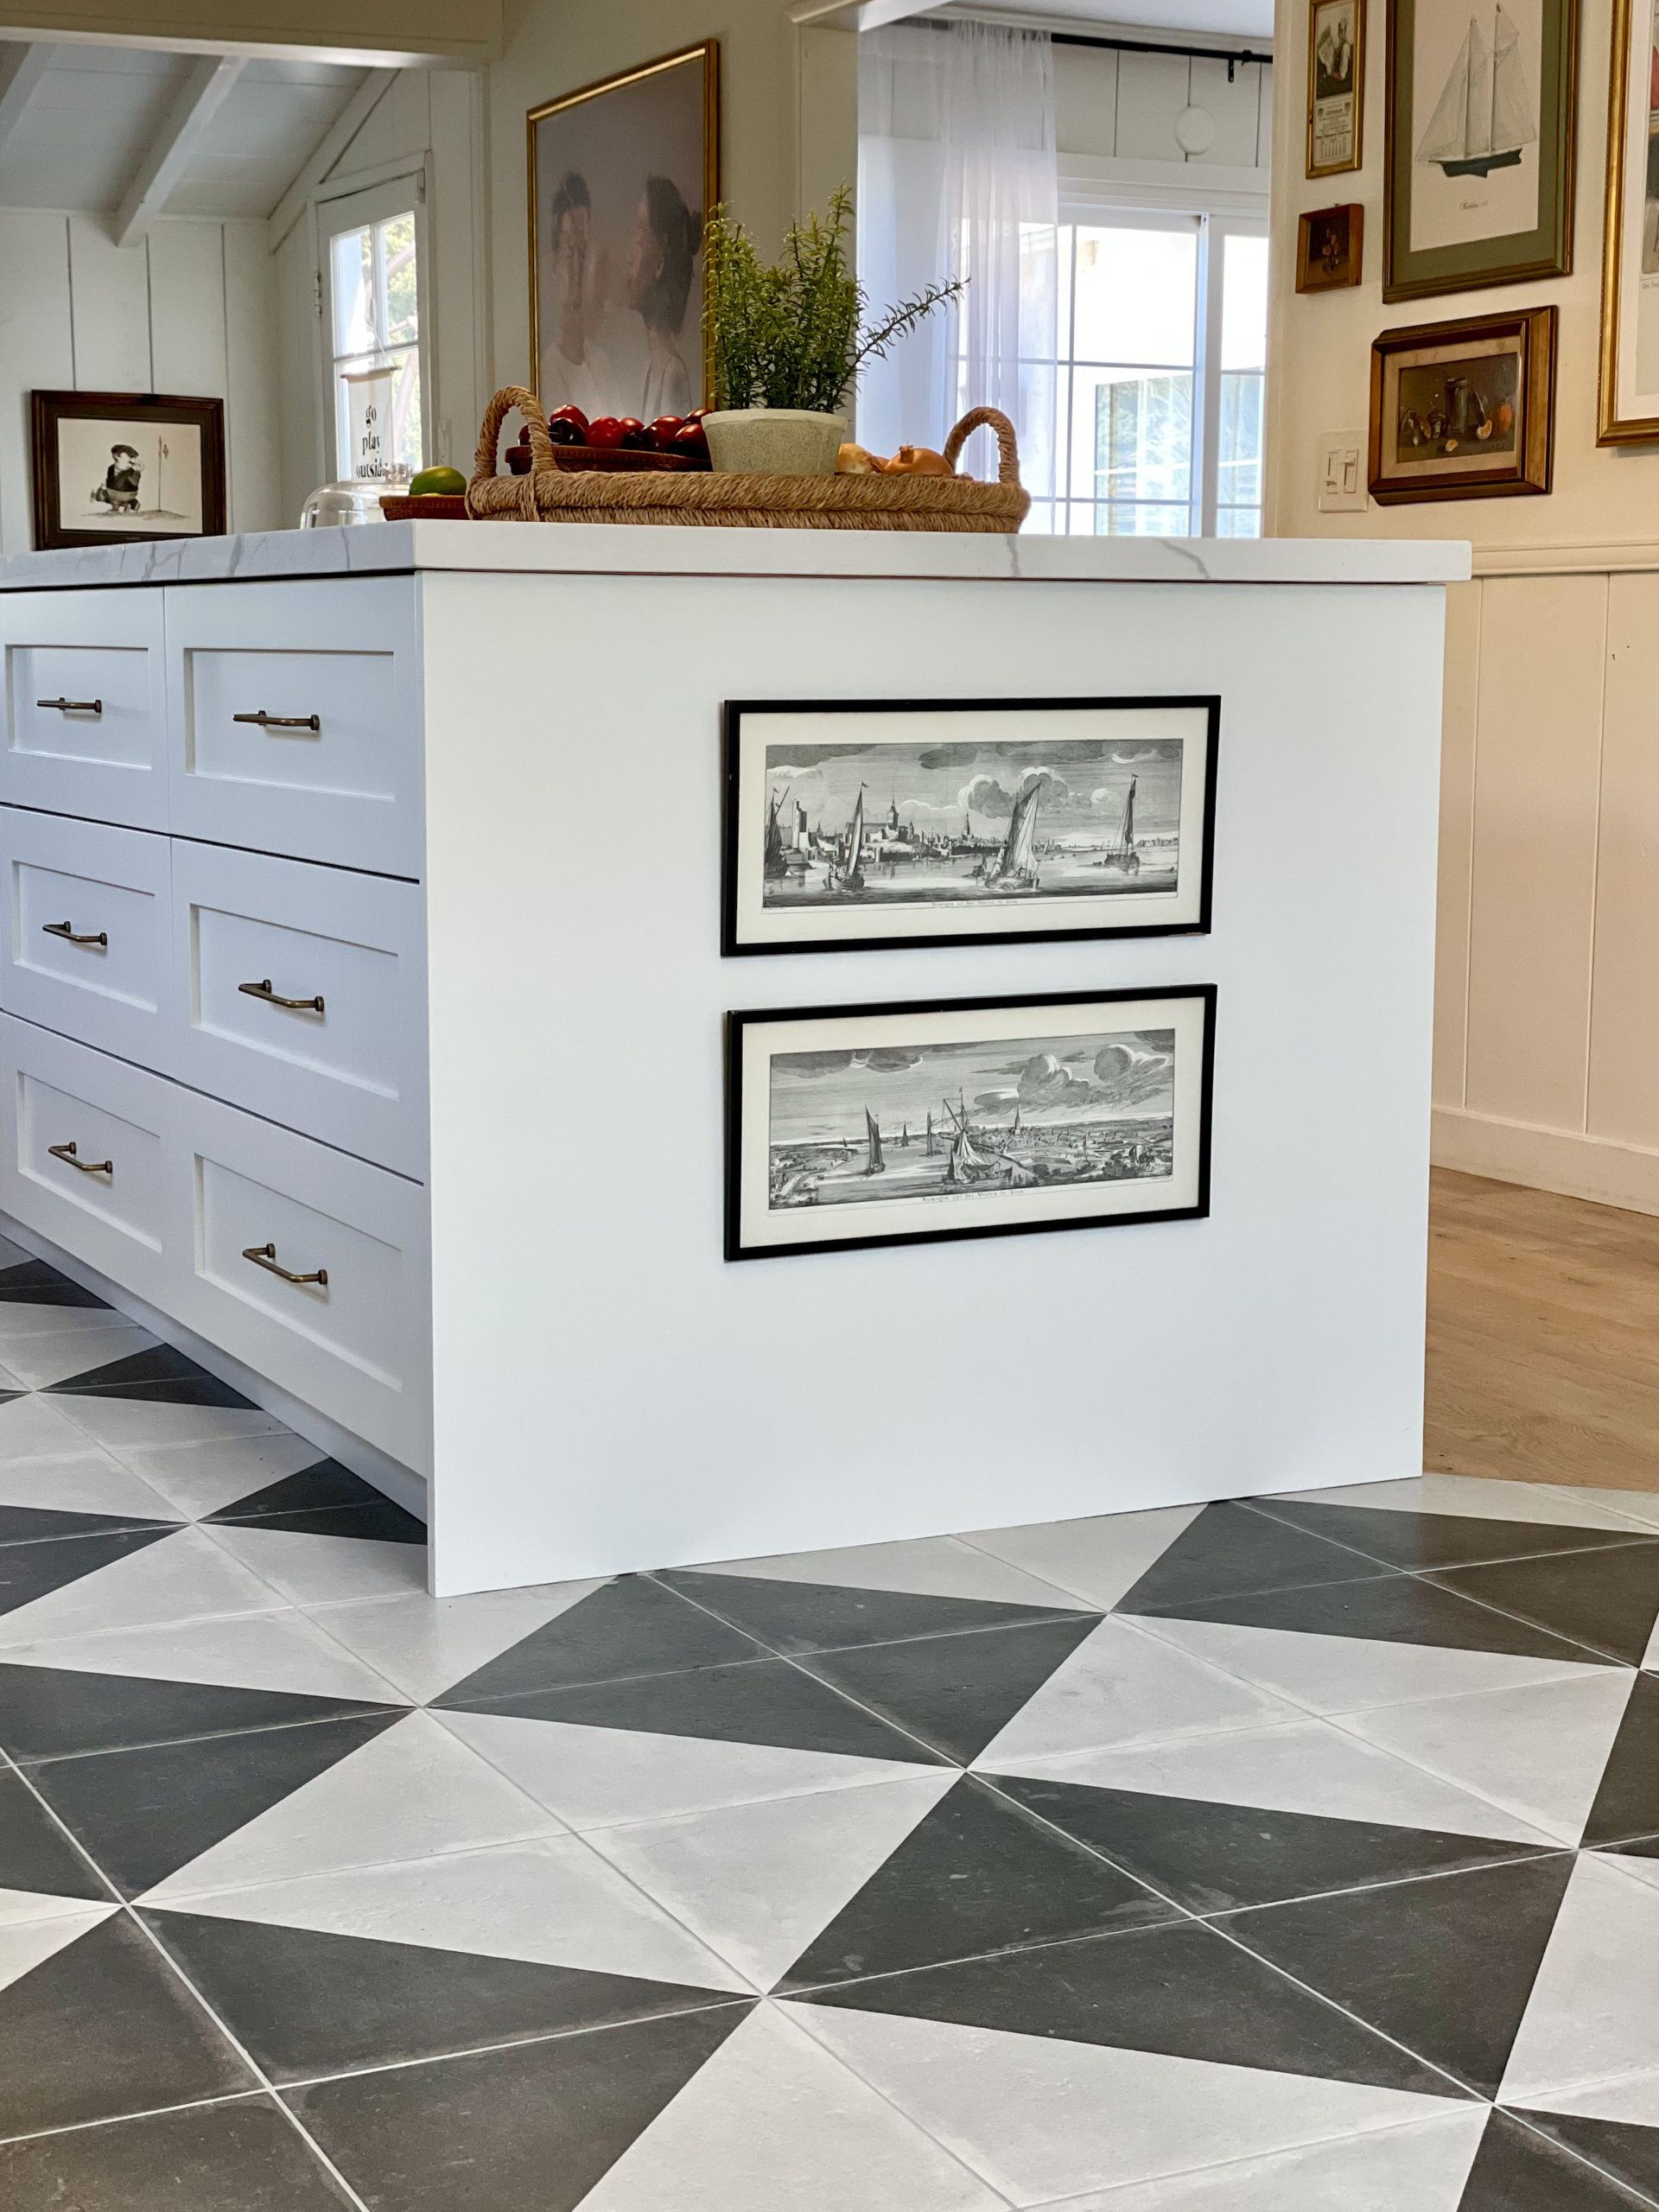 Art on kitchen island, checkered floors, wood and tile floor transition, ikea kitchen, white kitchen